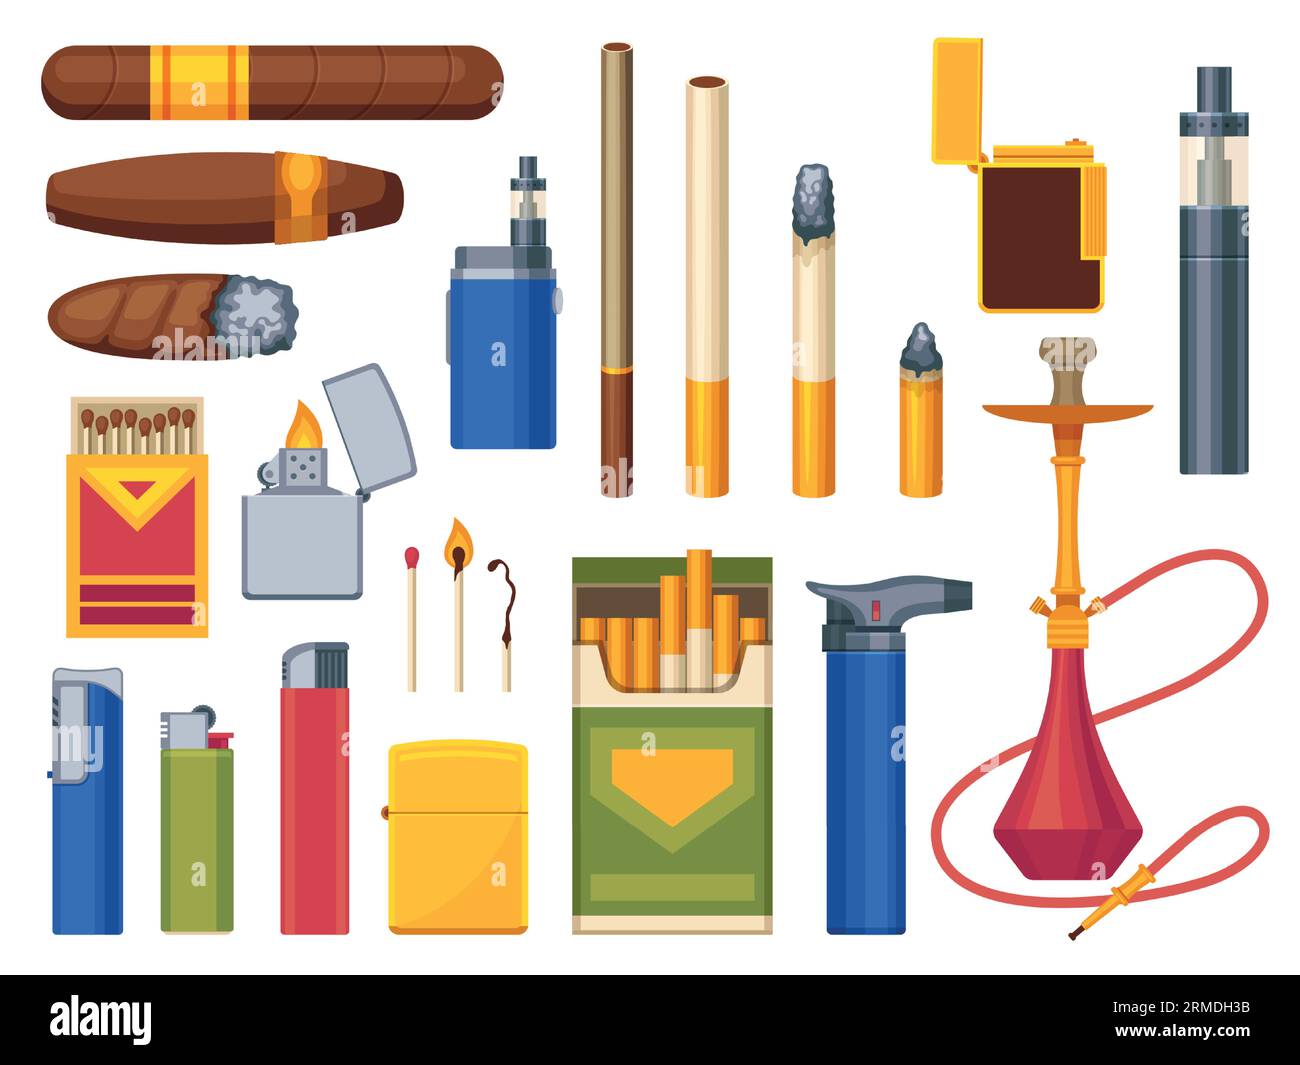 Rauchersucht-Sammlung. Cartoon-Zigarette, Zigarre und Shisha mit Feuer, Tabak und Rauchzubehör, Gewohnheits-Produkt-Ikonen. Vektor-isoliertes Set Stock Vektor